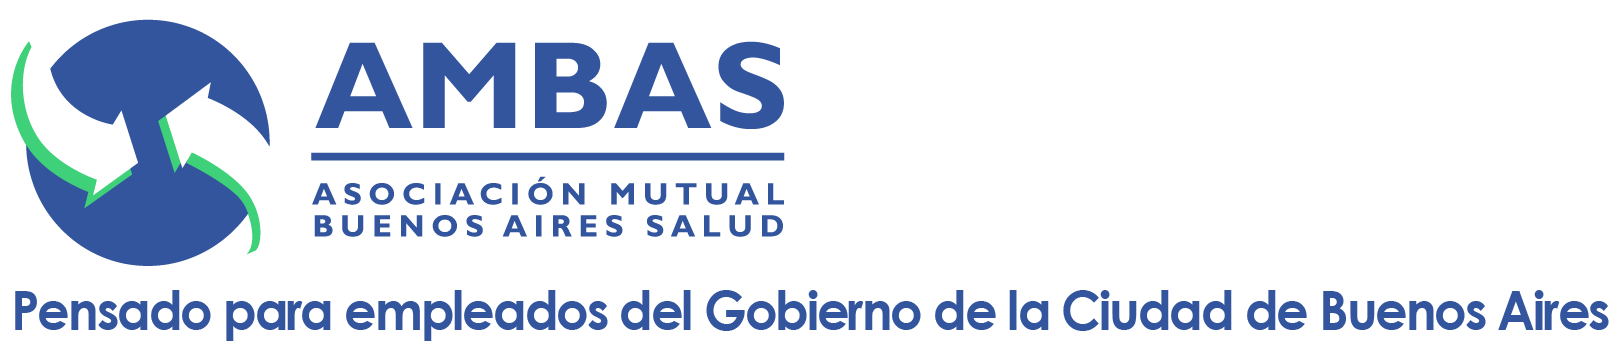 AMBAS - Asociación Mutual Buenos Aires Salud